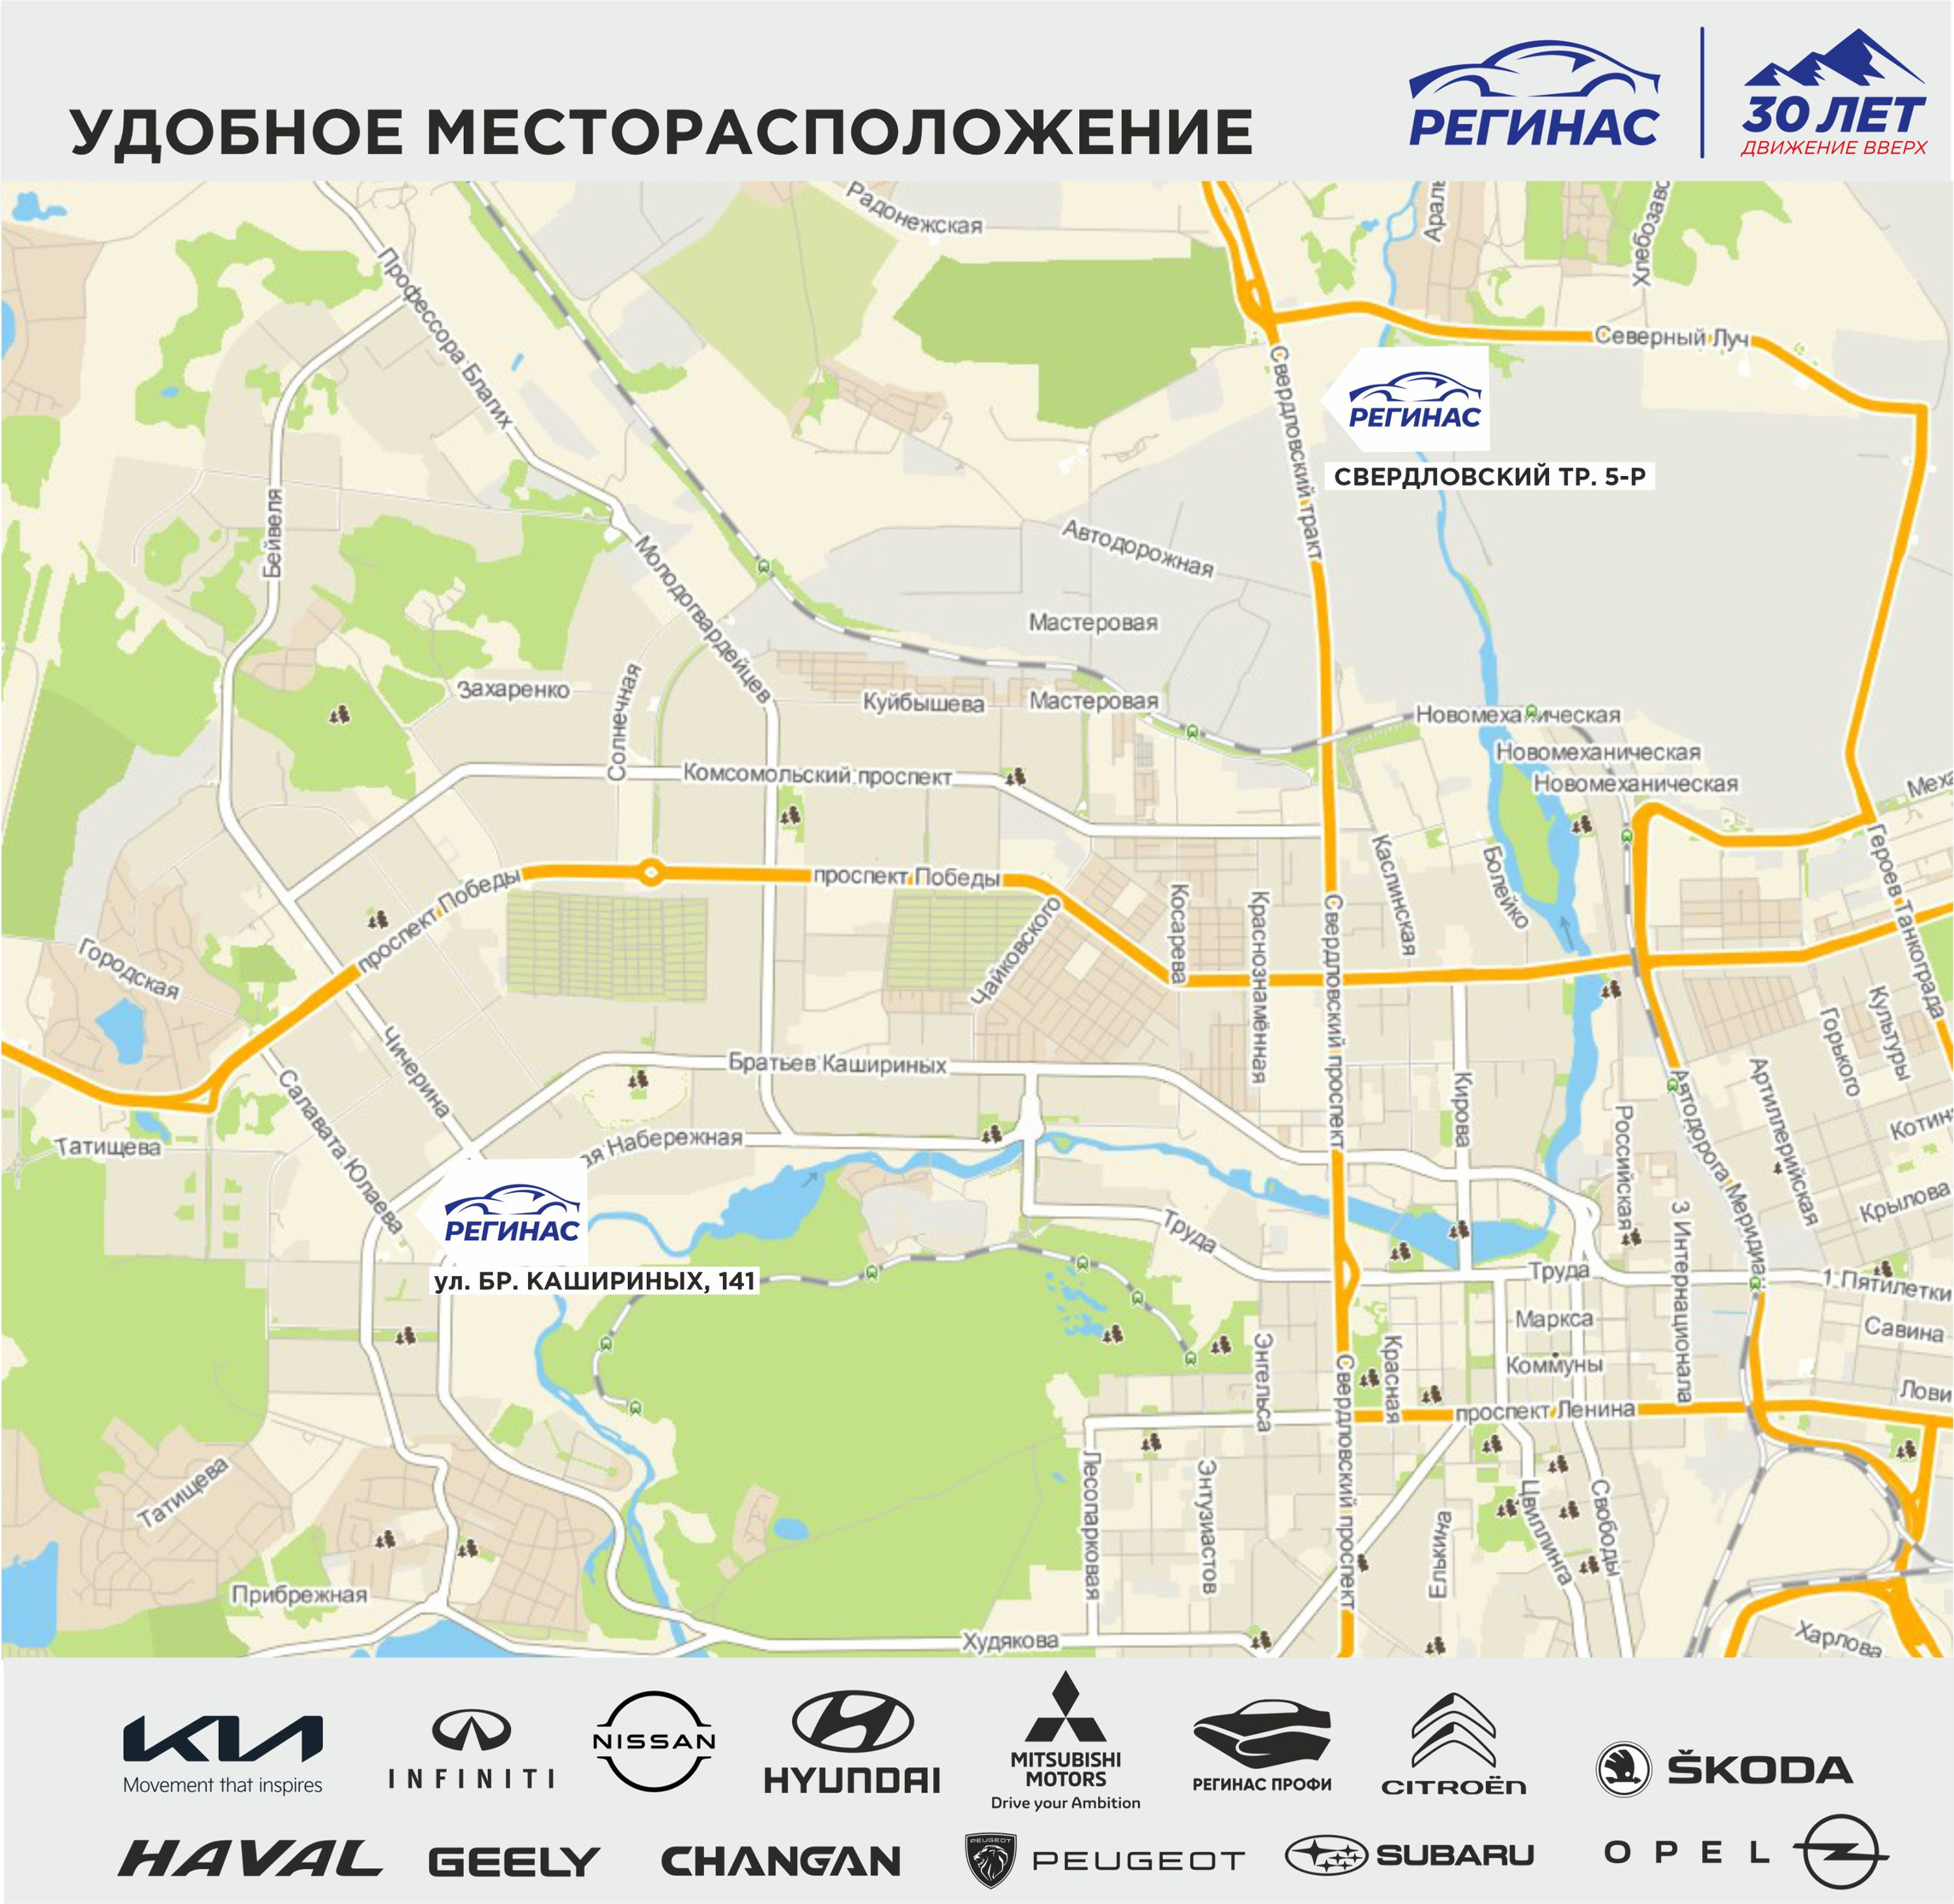 Автохолдинг «Регинас» находится по двум адресам в Челябинске — на Свердловском тракте, 5р и на Братьев Кашириных, 141